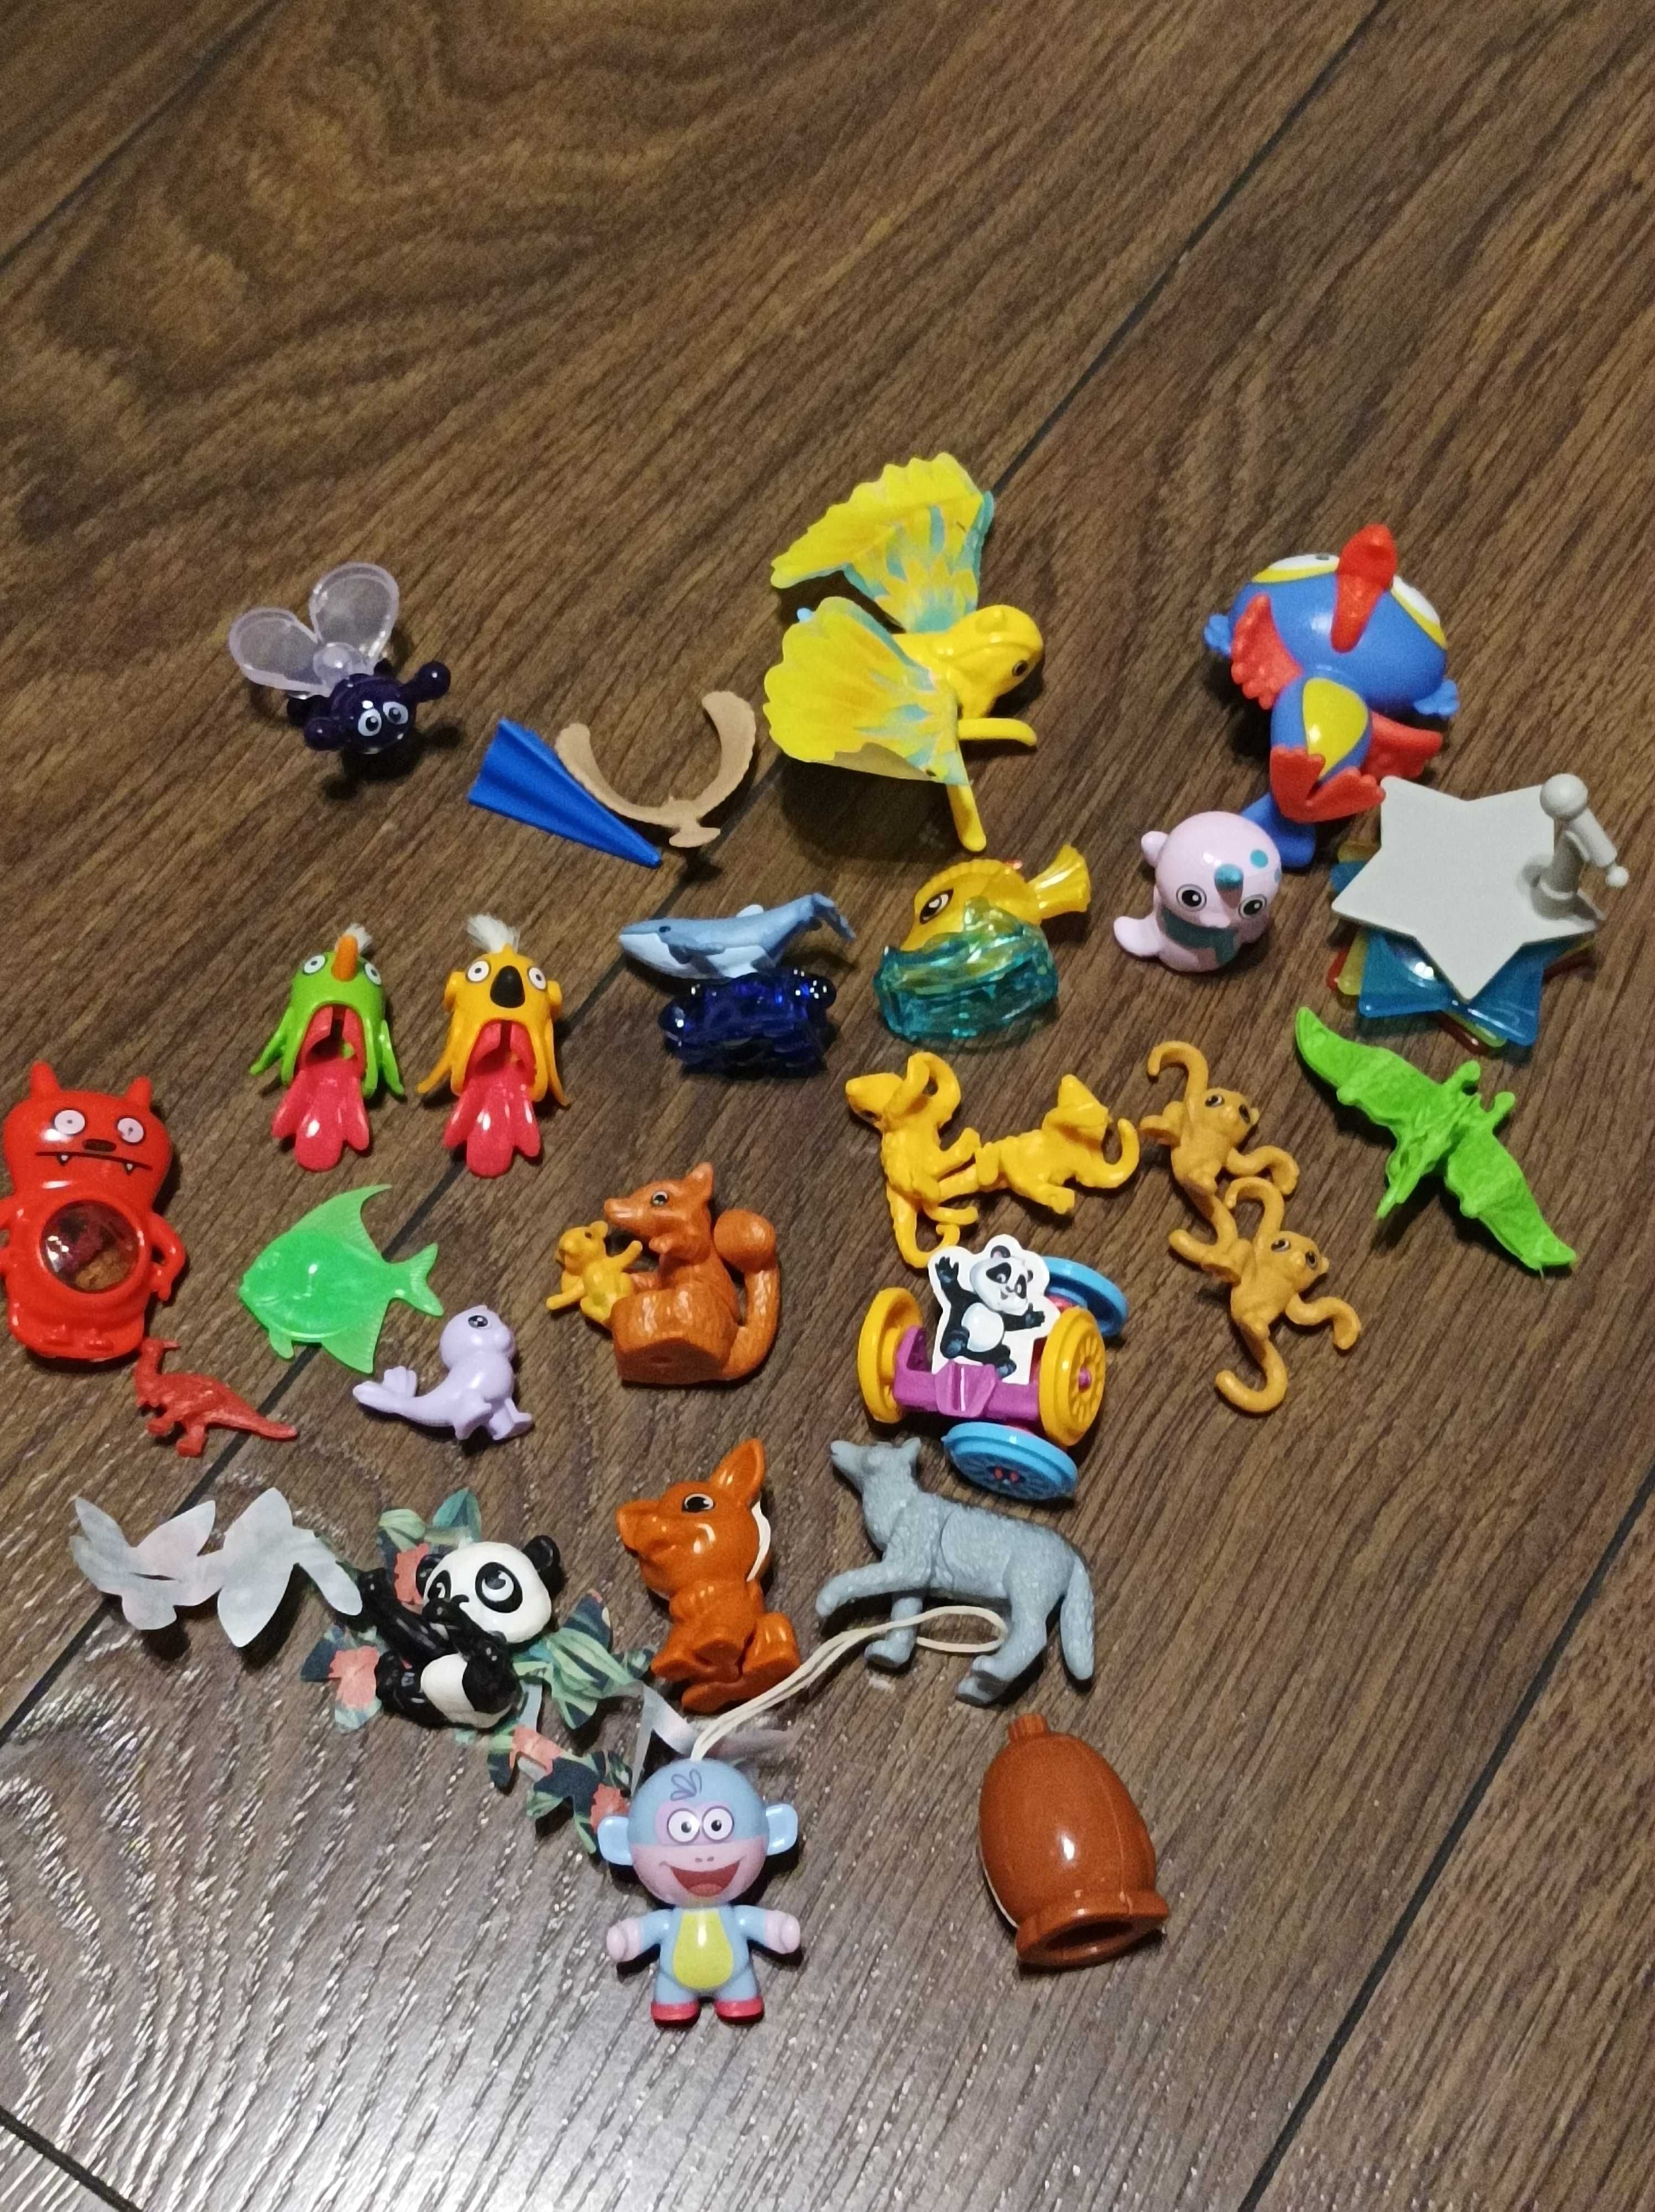 Іграшки з Кіндер сюрприз (80 шт)